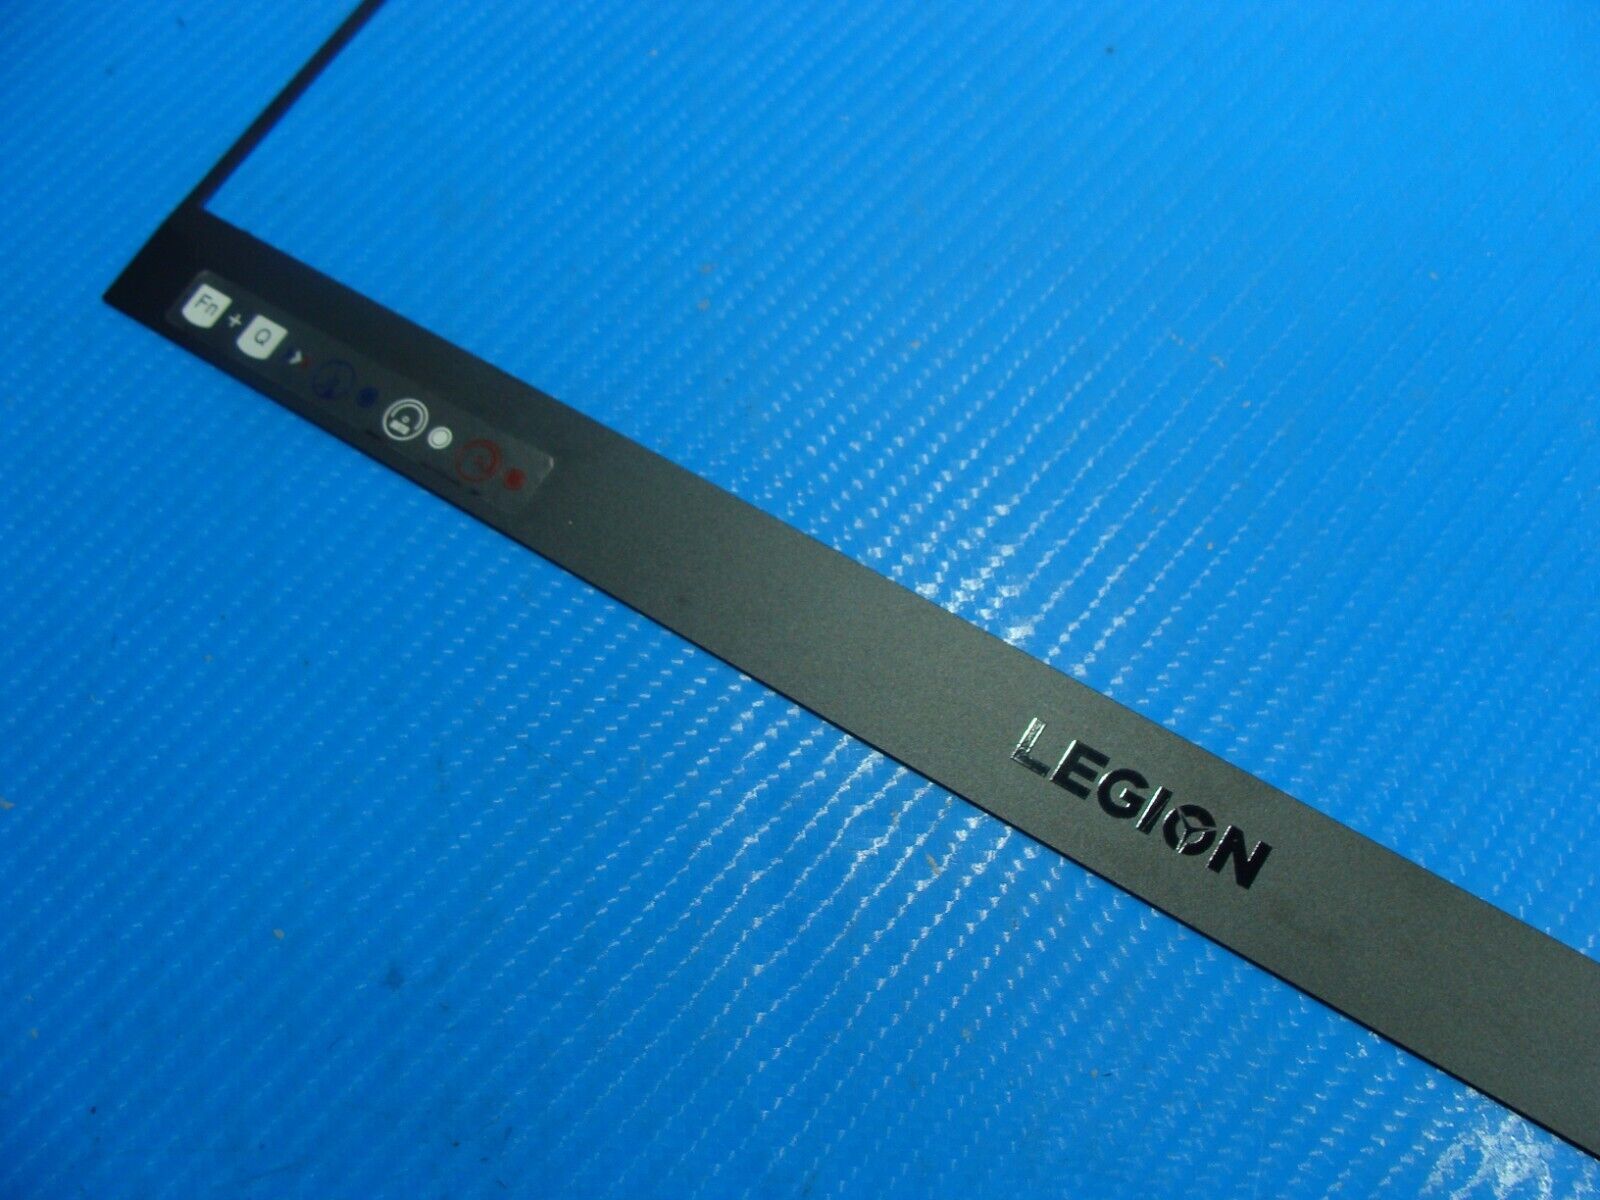 Lenovo Legion 15.6